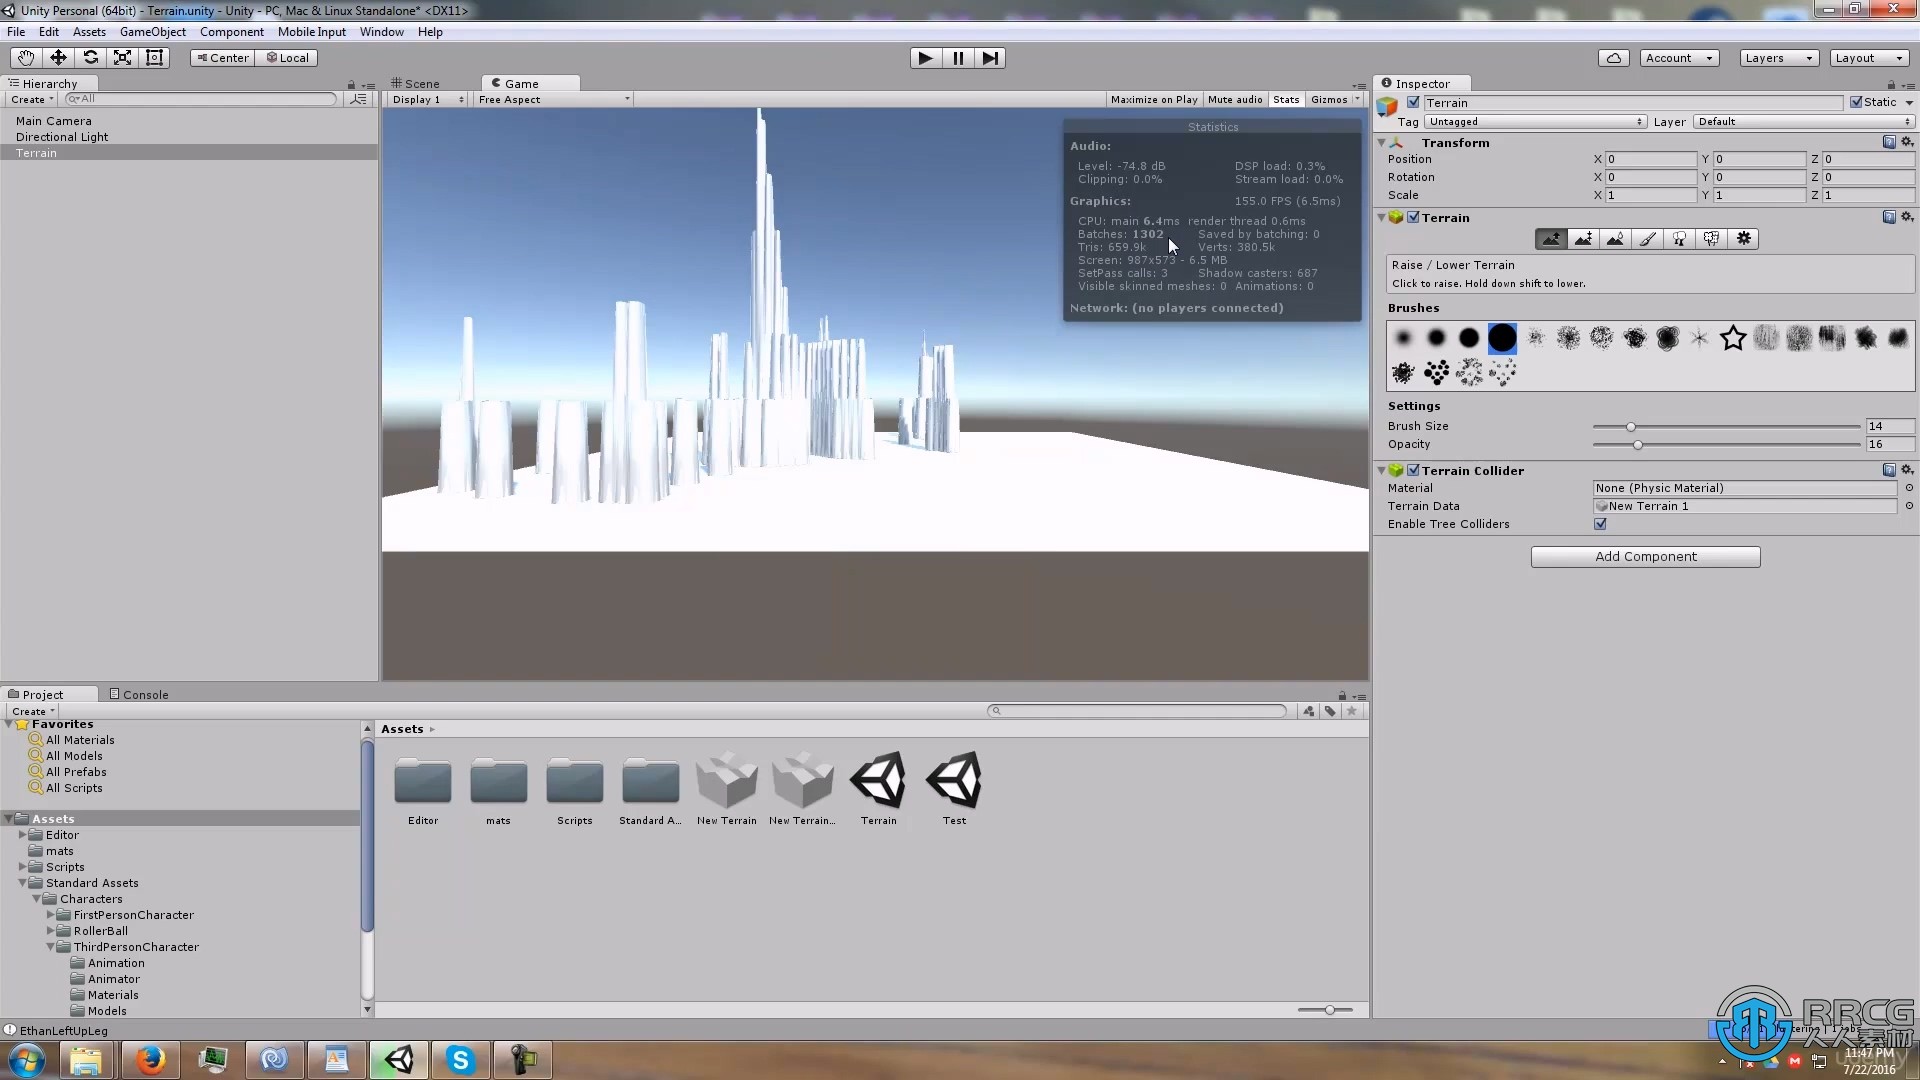 【中文字幕】Unity 3D游戏开发核心概念训练视频教程